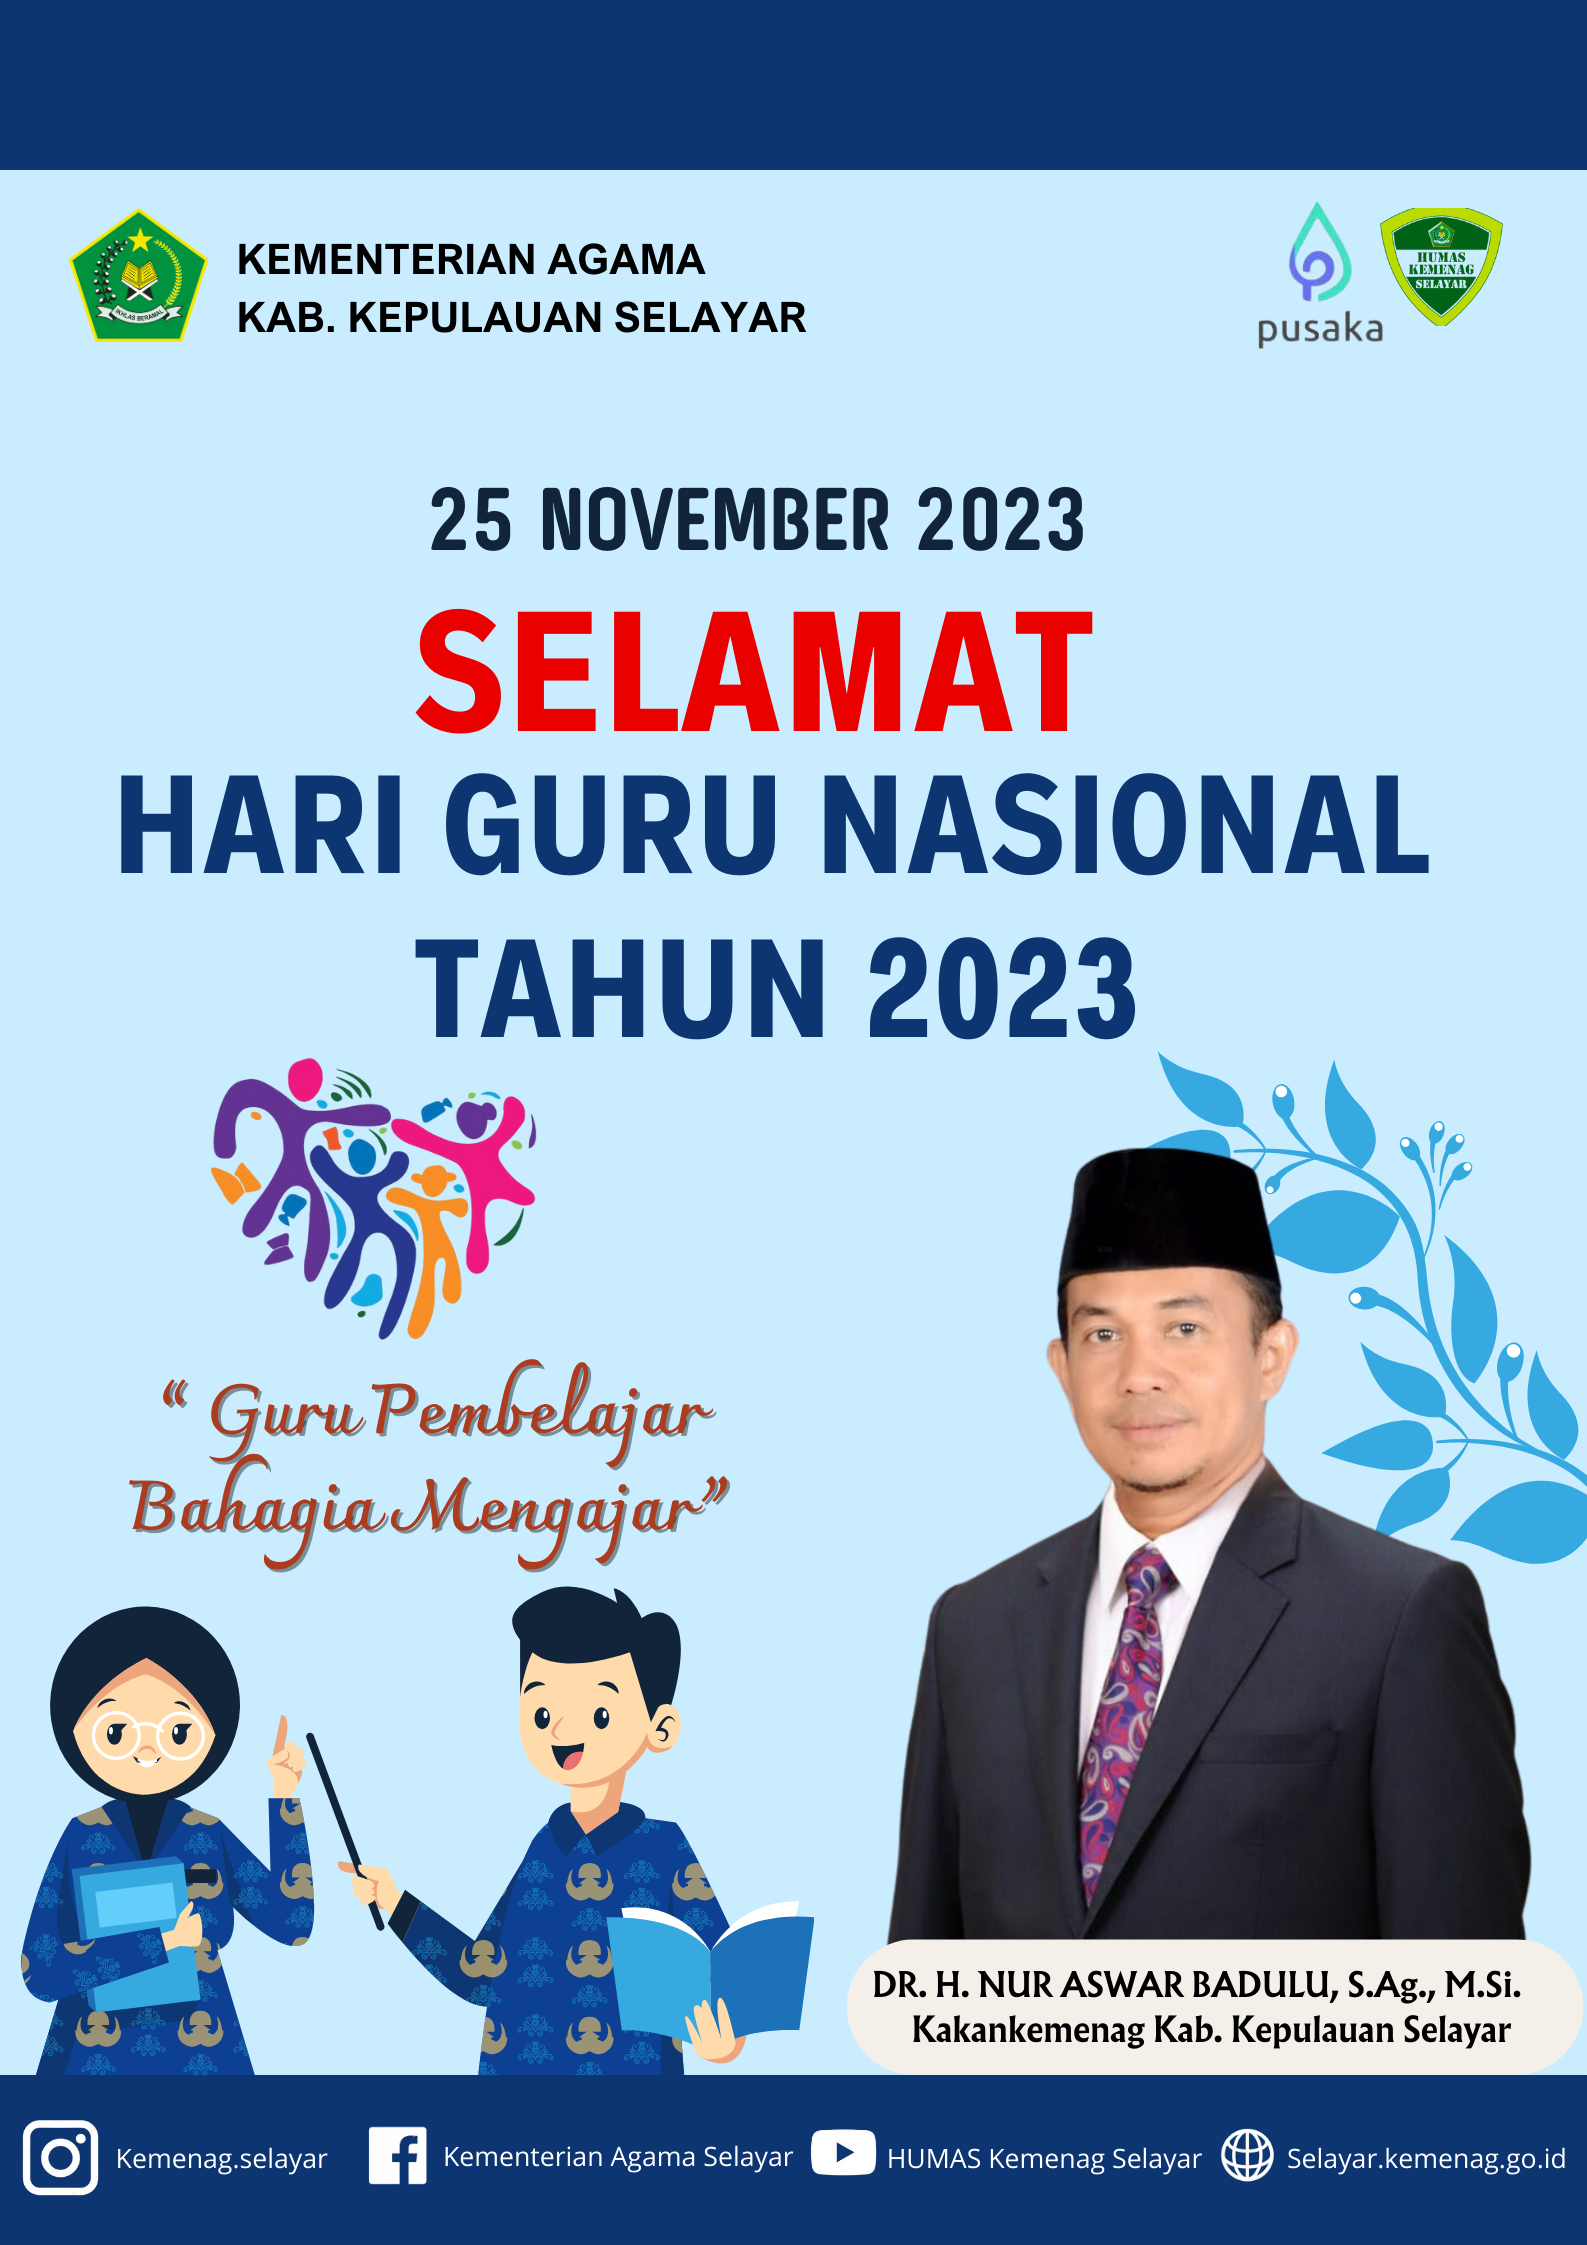 Selamat Hari Guru Nasional Tahun 2023